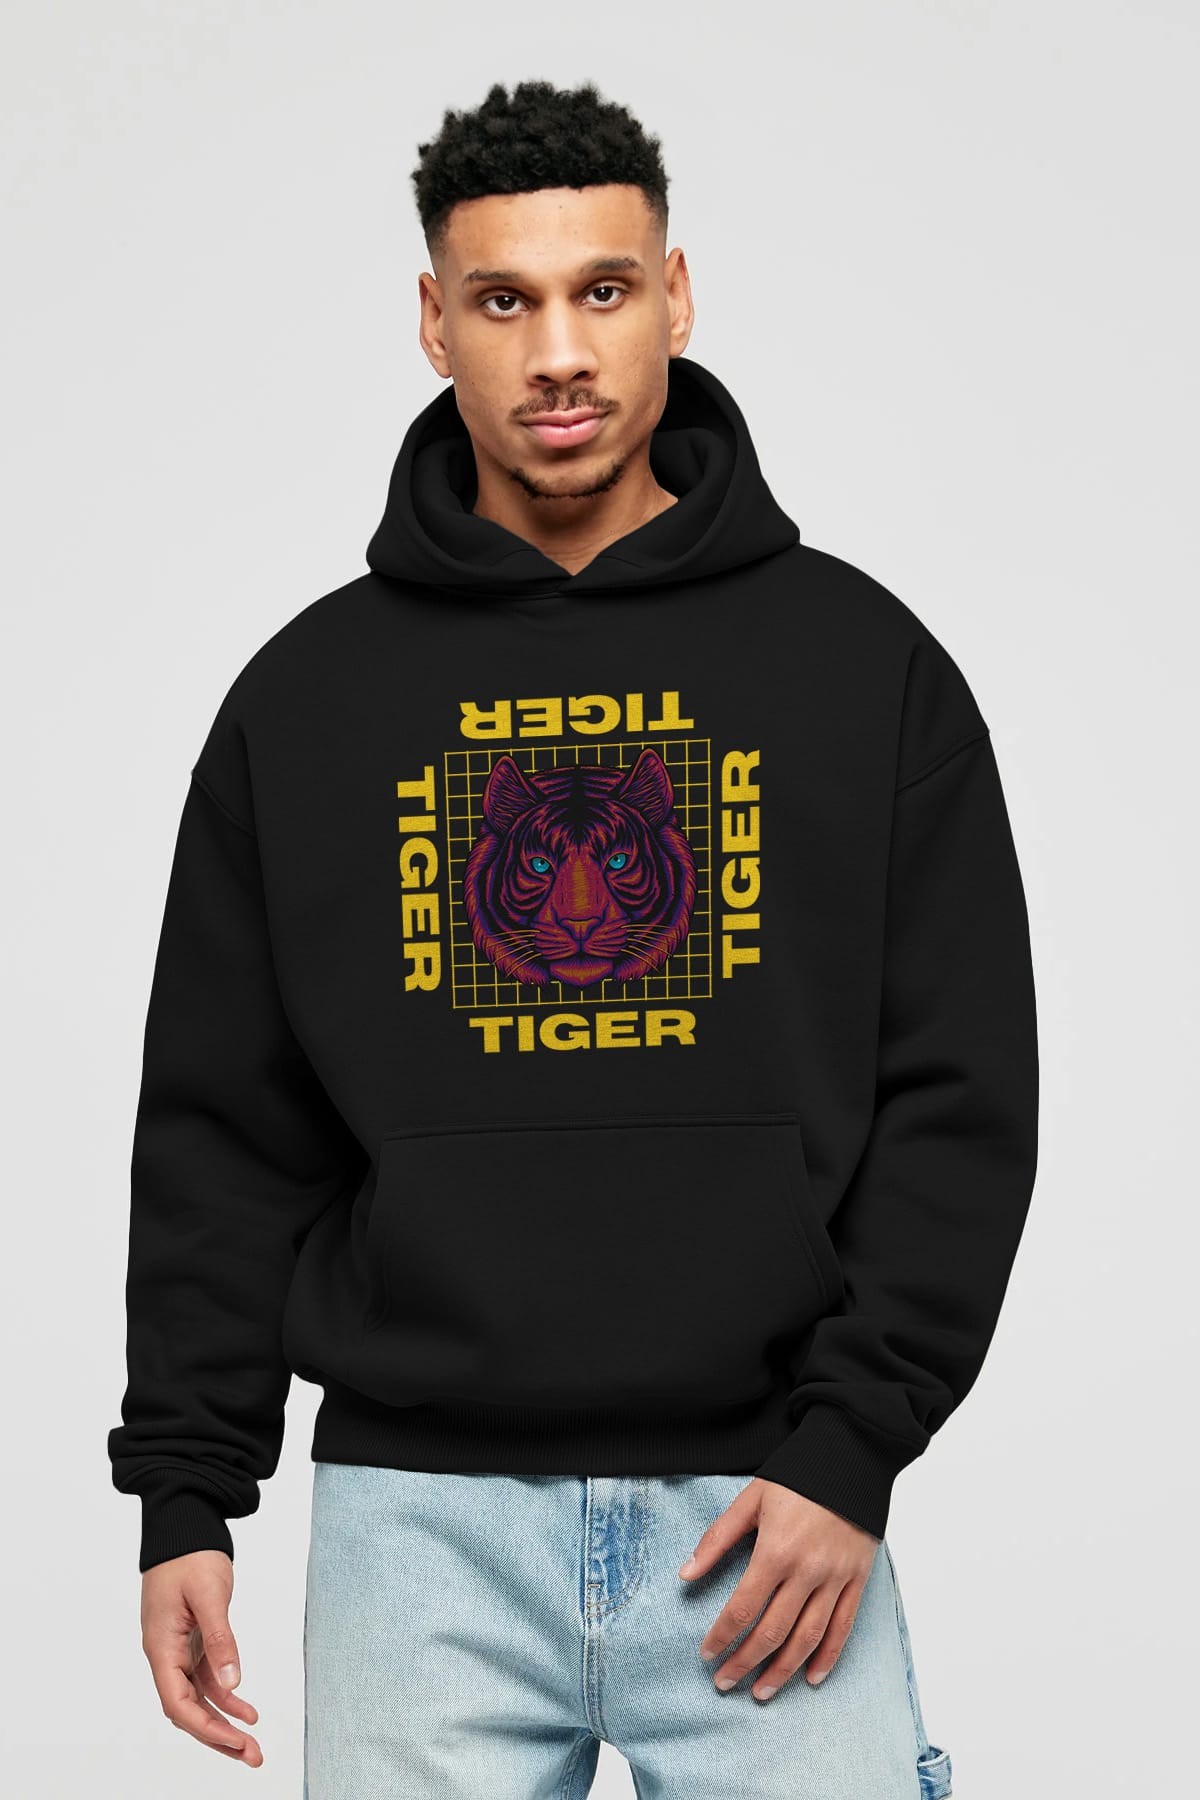 Tiger Yazılı Streetwear Ön Baskılı Oversize Hoodie Kapüşonlu Sweatshirt Erkek Kadın Unisex